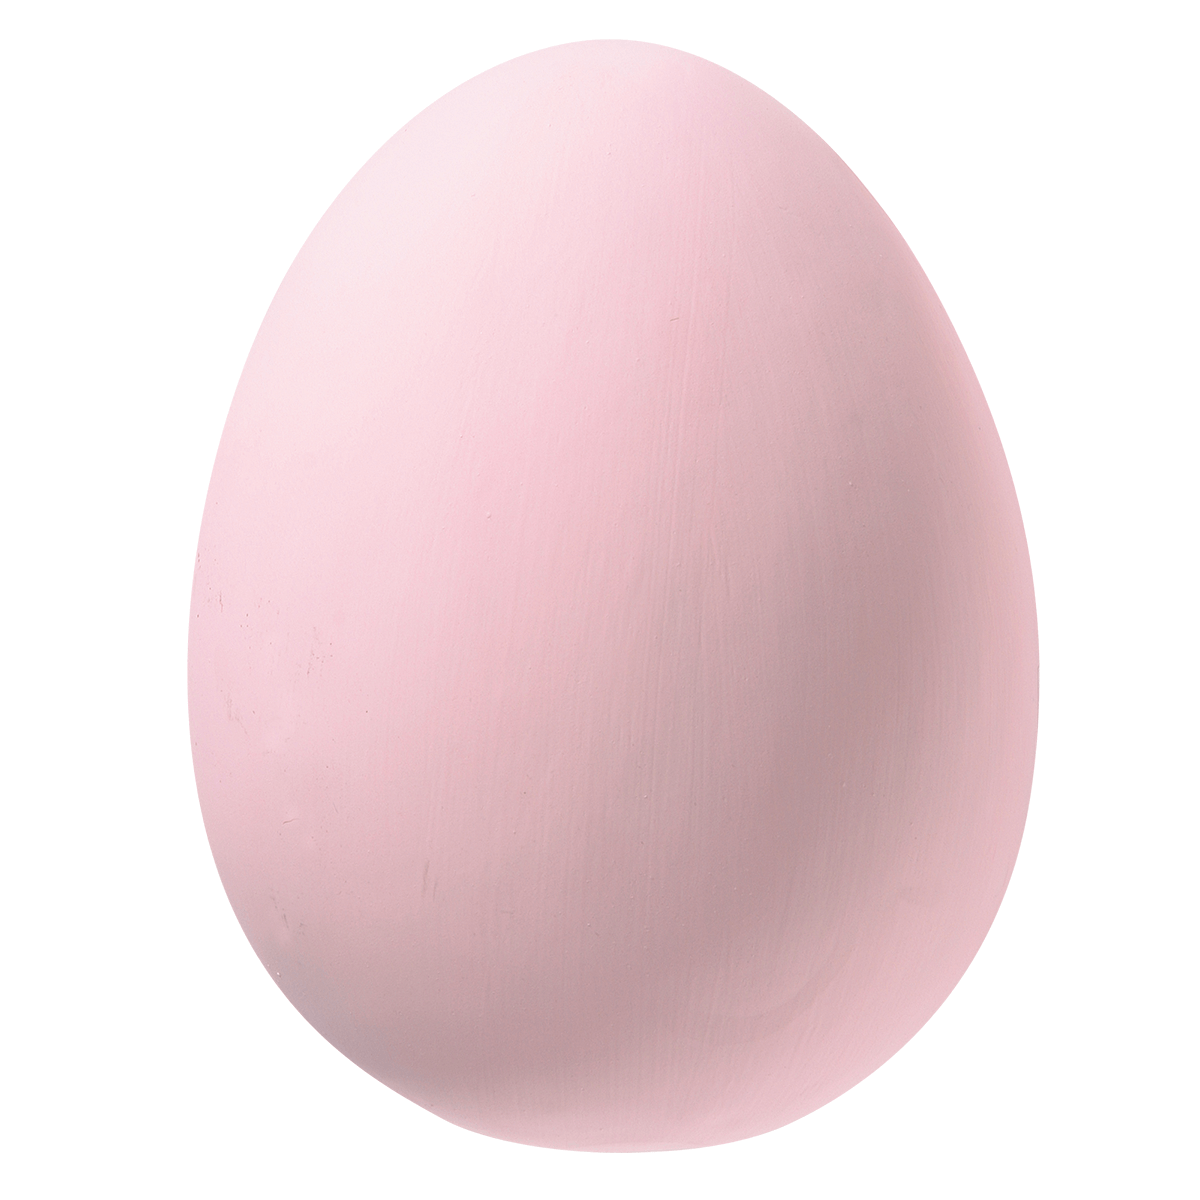 Huevos de plástico de juguete de colores sobre un fondo rosa